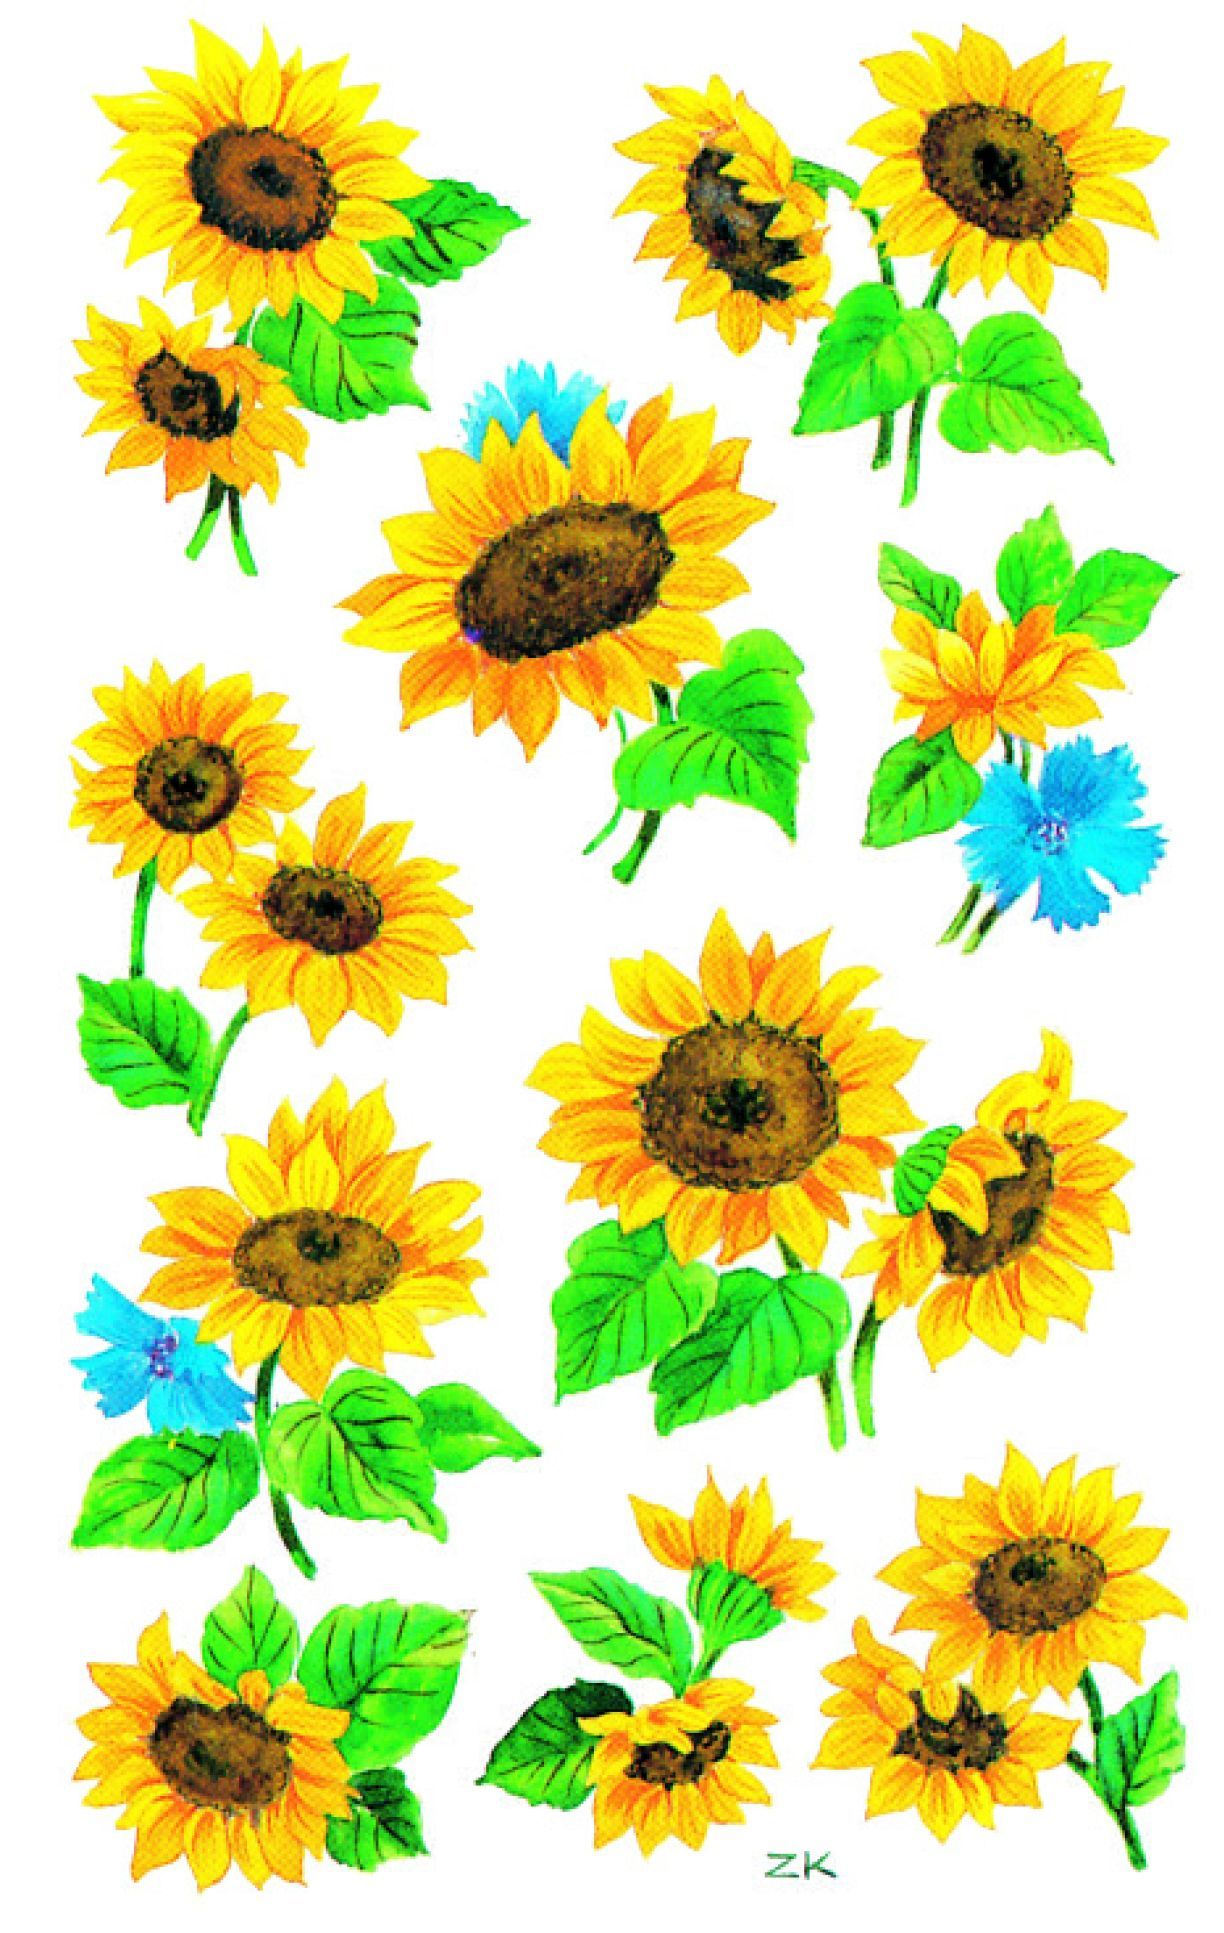 Z-Design 54103, Deko Sticker, Sonnenblumen, 3 Bogen/30 Sticker